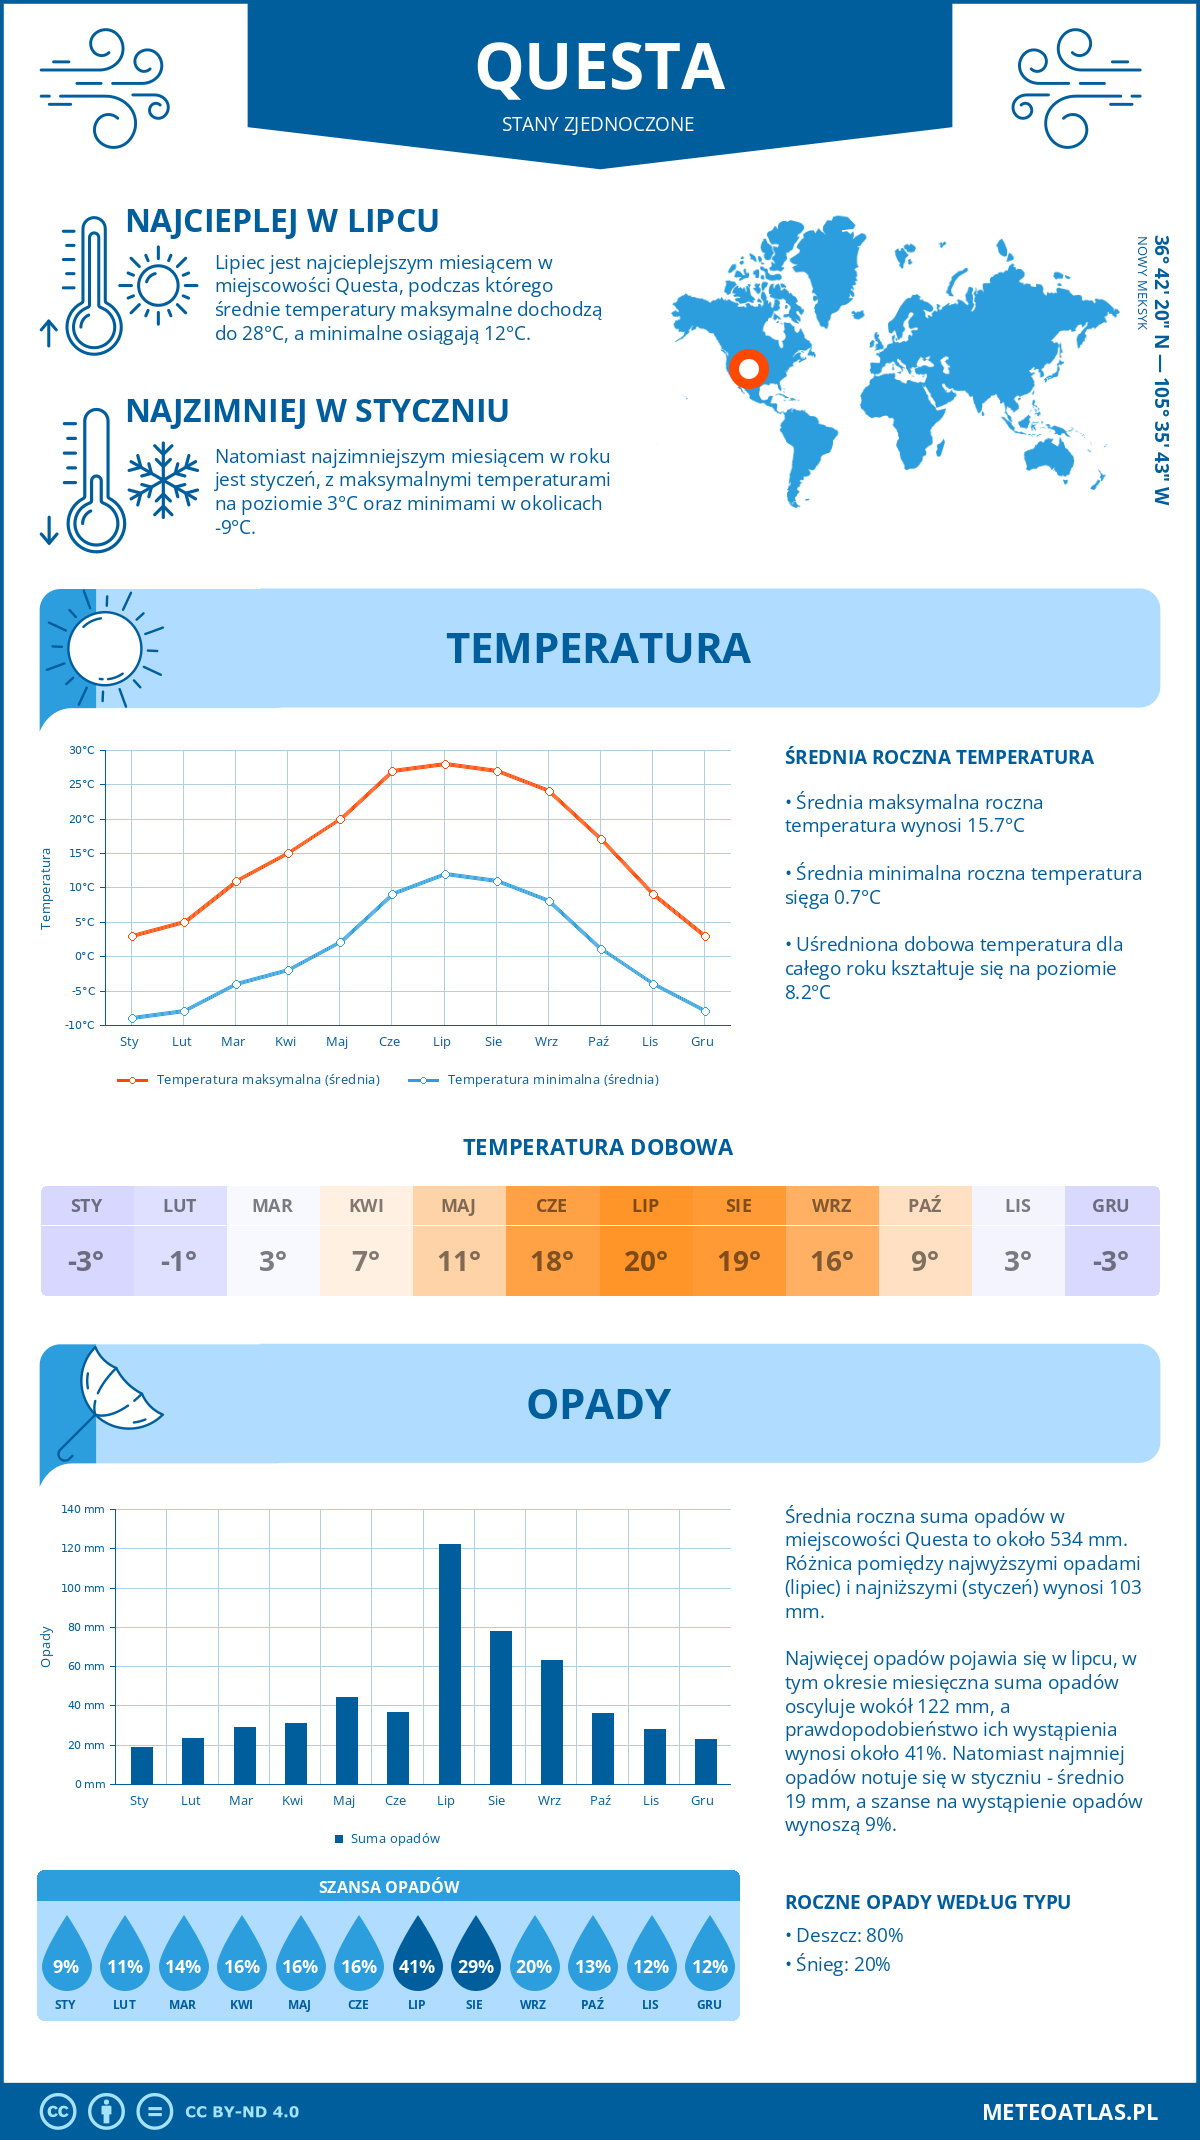 Pogoda Questa (Stany Zjednoczone). Temperatura oraz opady.